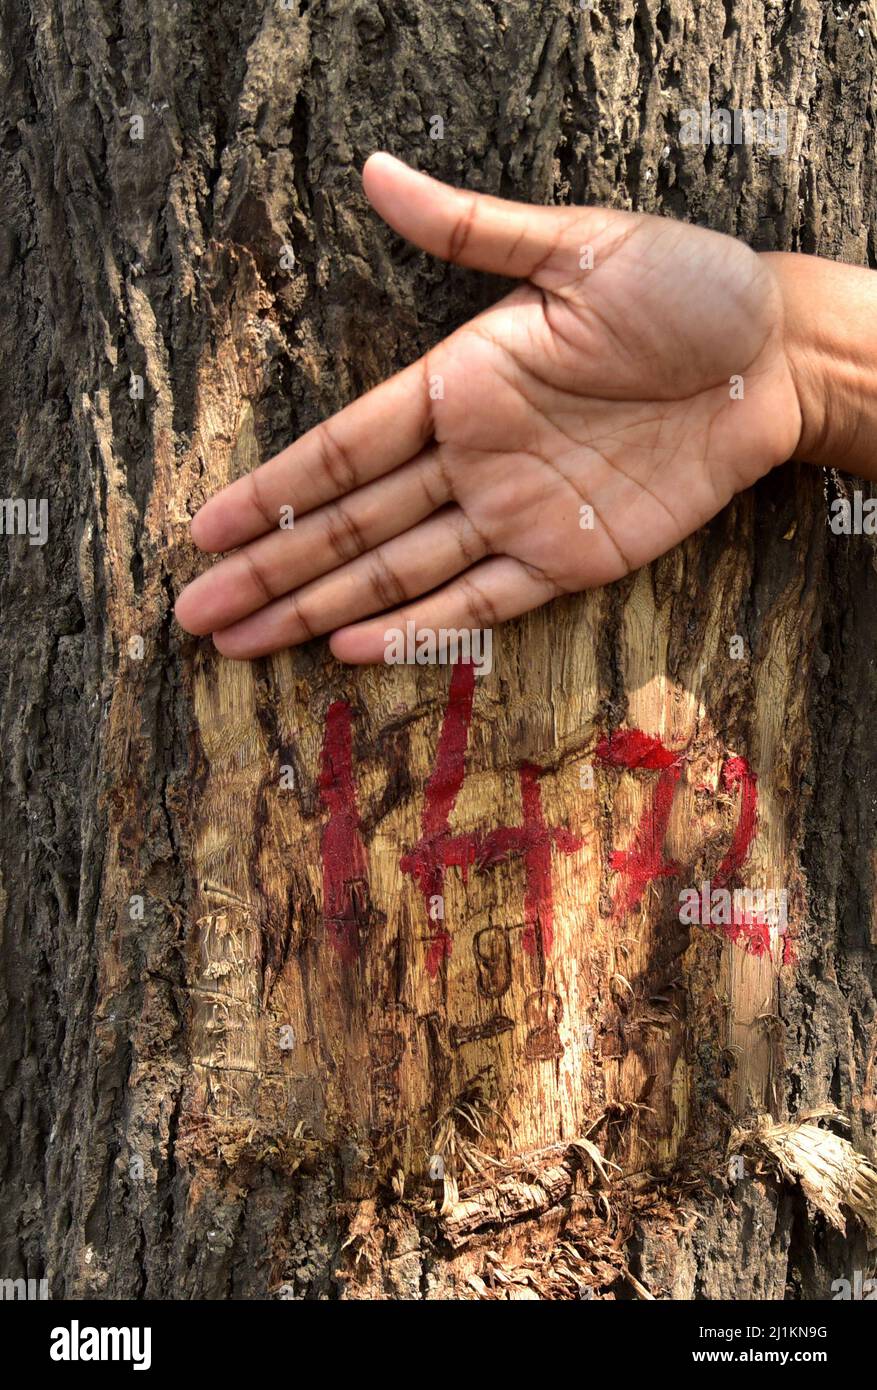 Guwahati, Guwahati, Indien. 26. März 2022. Ein Baum, der abgehackt wird, wird am Samstag, 26.. März 2022, für den Bau von sechs-spurigen Straßen in Guwahati Assam India markiert.rund 2000 Bäume werden für den Bau der sechs-spurigen Straßen gefällt.Foto-DASARATH DEKA (Bild: © Dasarath Deka/ZUMA Press Wire) Stockfoto